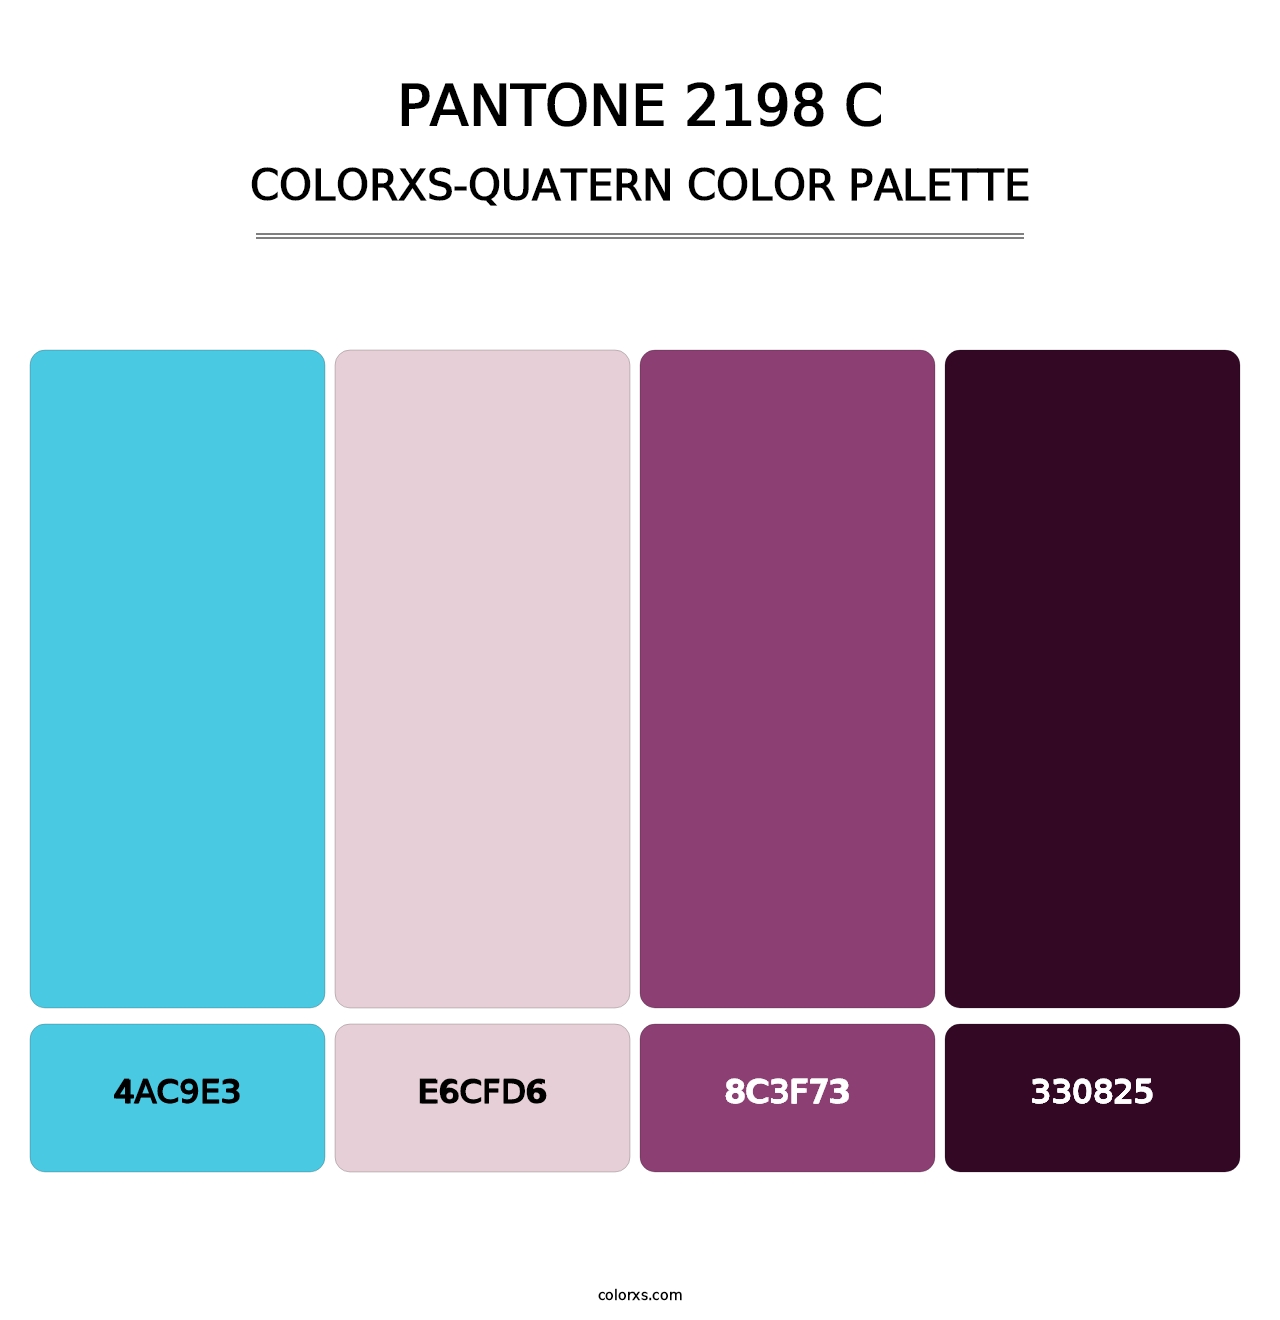 PANTONE 2198 C - Colorxs Quatern Palette